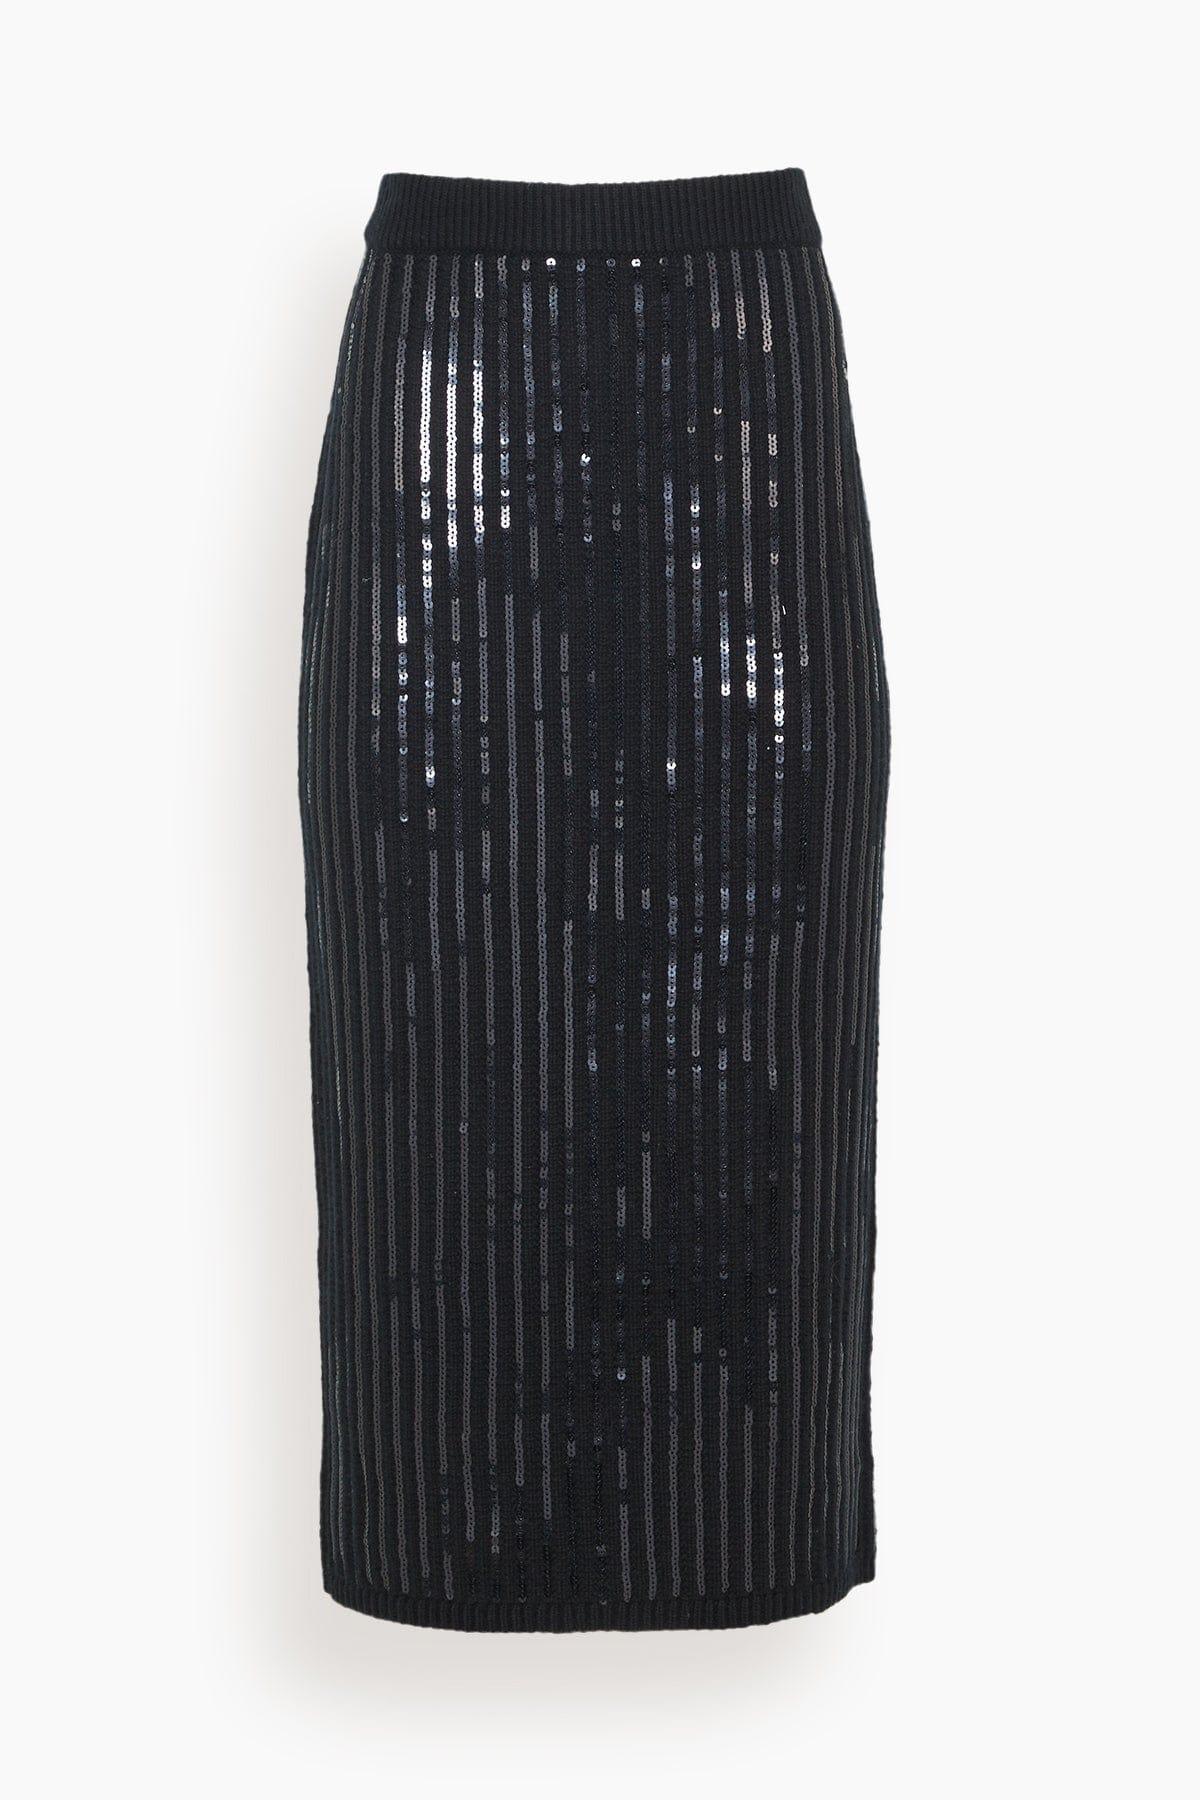 Dorothee Schumacher Sequin Statement Skirt in Black | Lyst